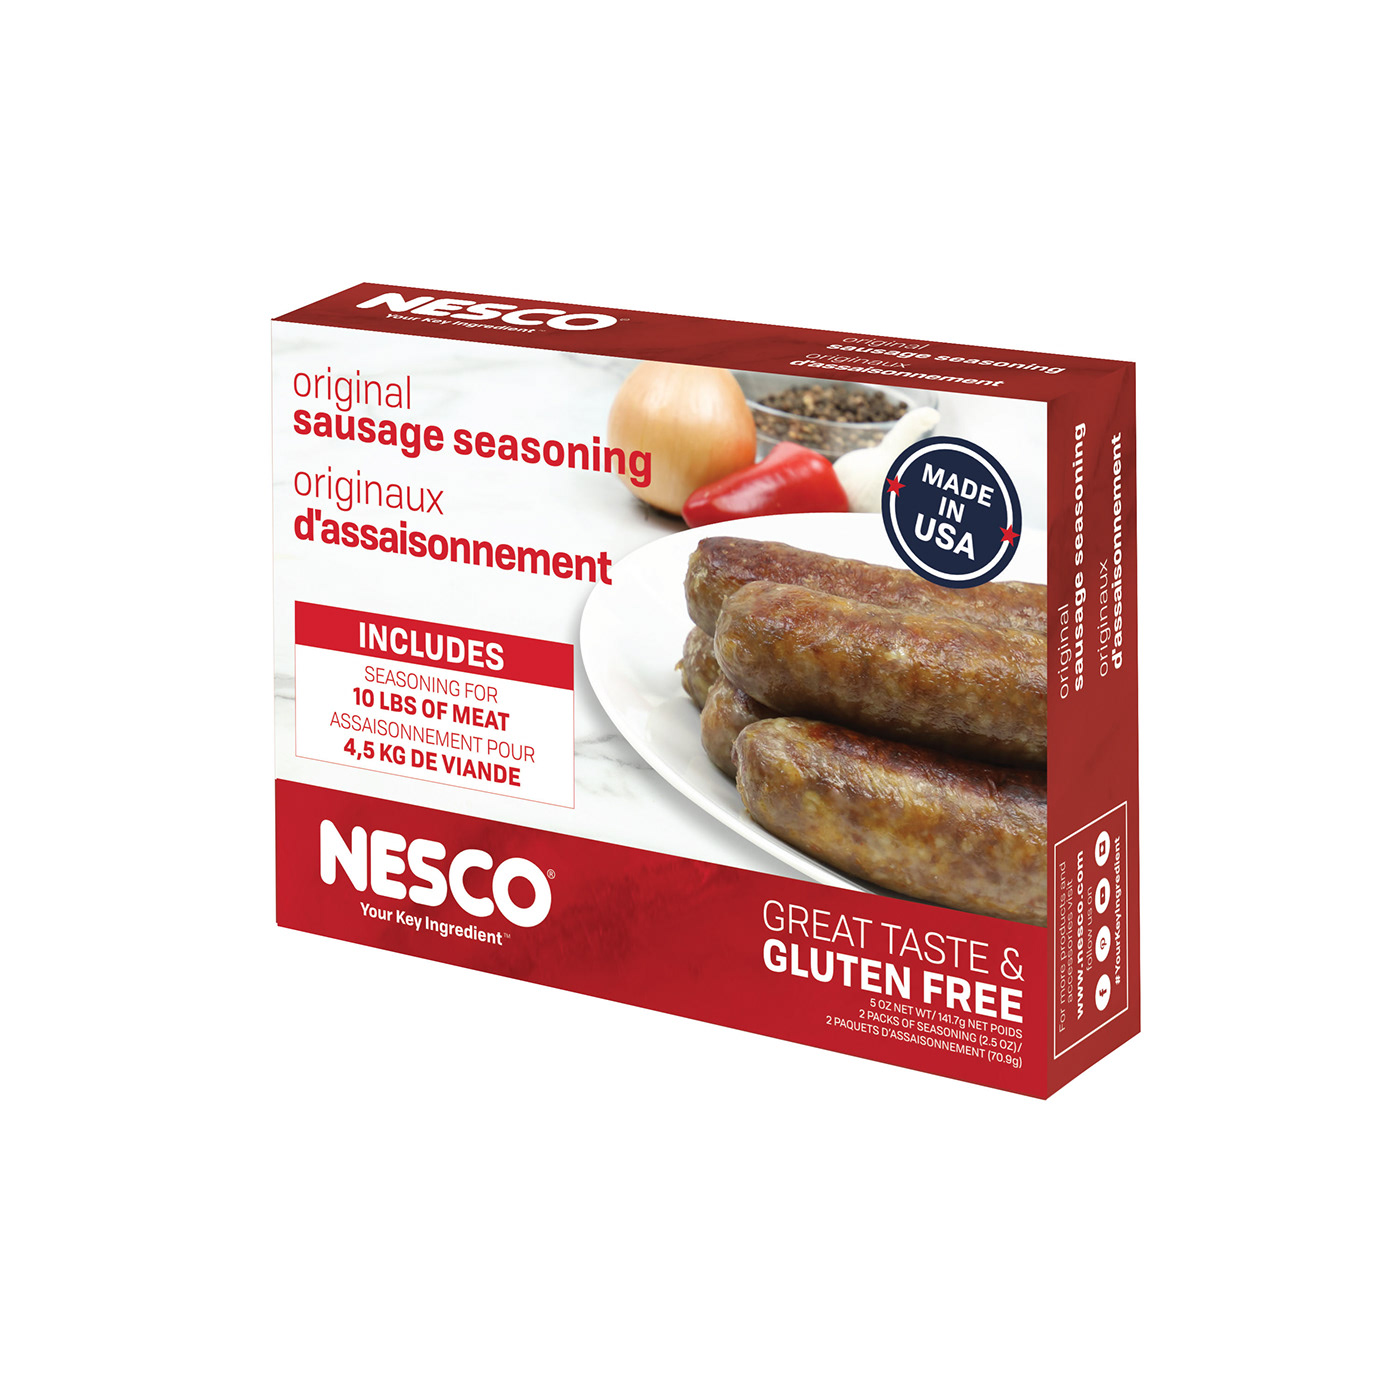 Food Packaging foodstyling nesco Packaging sausage seasoning